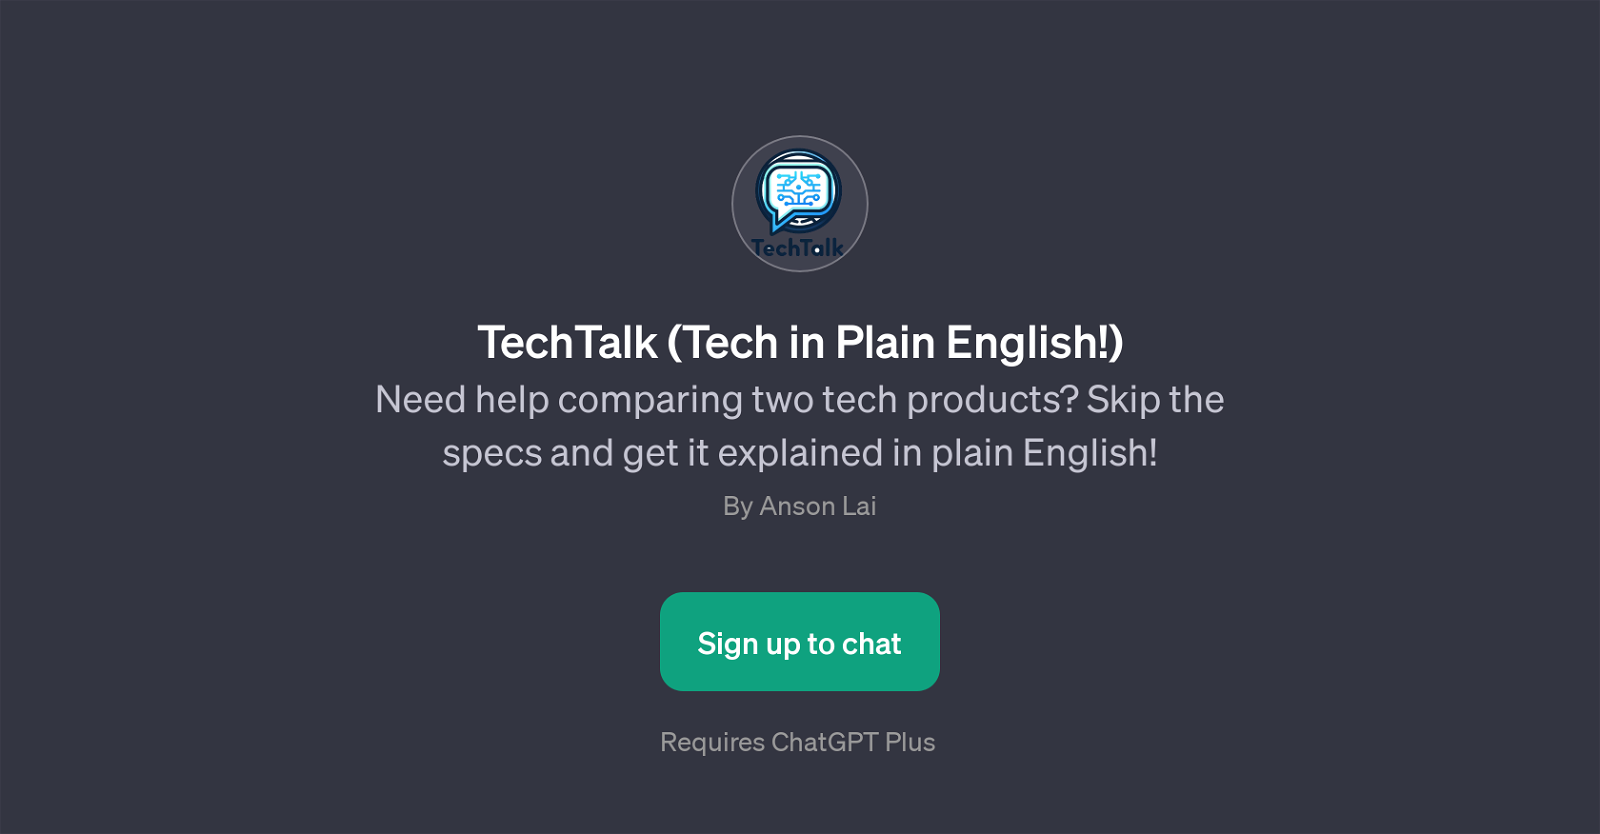 TechTalk website